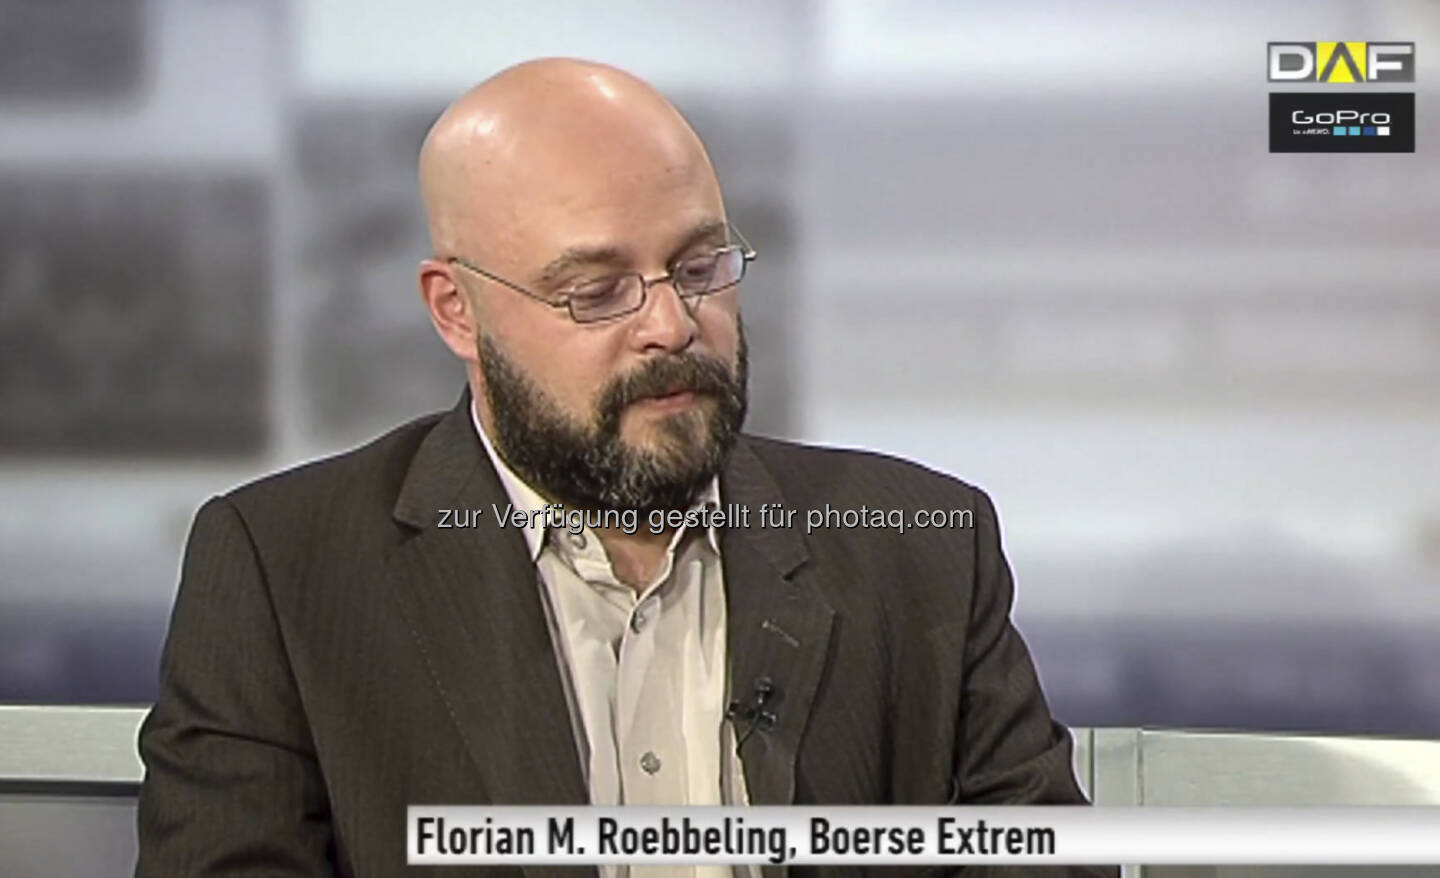 Flo Roebbeling erklärt die Idee hinter Börse Extrem, Hintergrund und Video siehe http://www.christian-drastil.com/2013/08/26/das_video_zu_borse_extrem